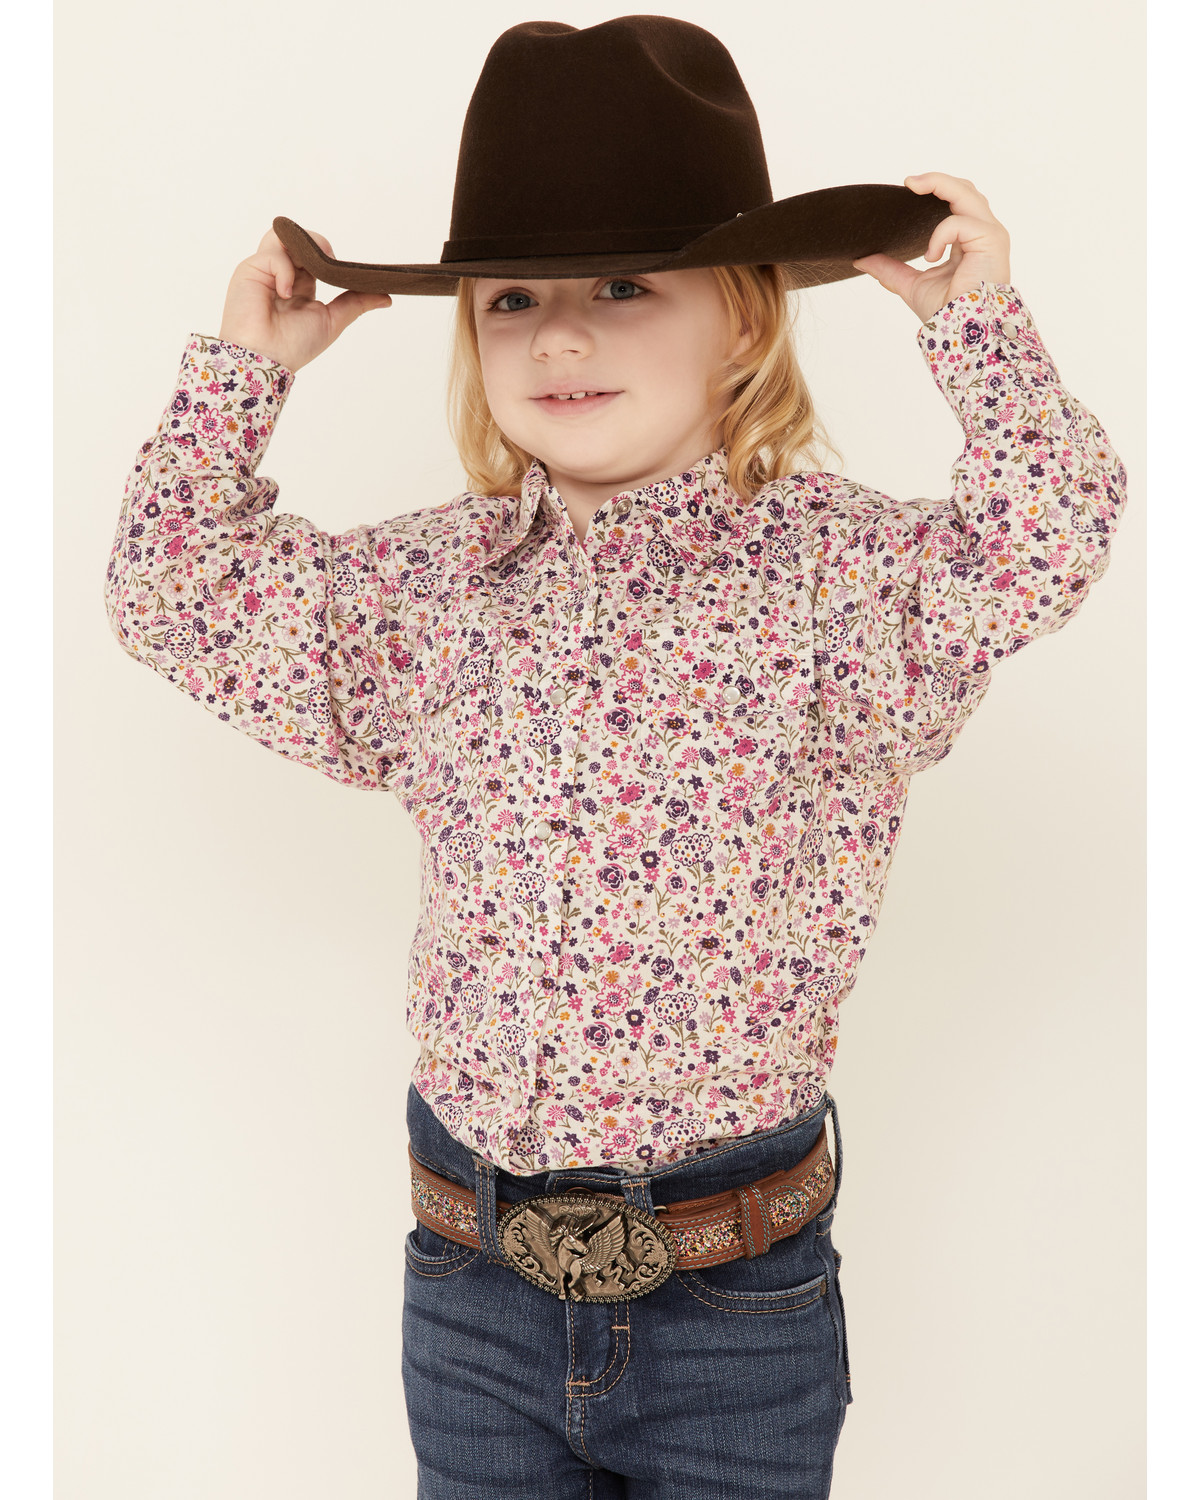 toddler cowboy shirt